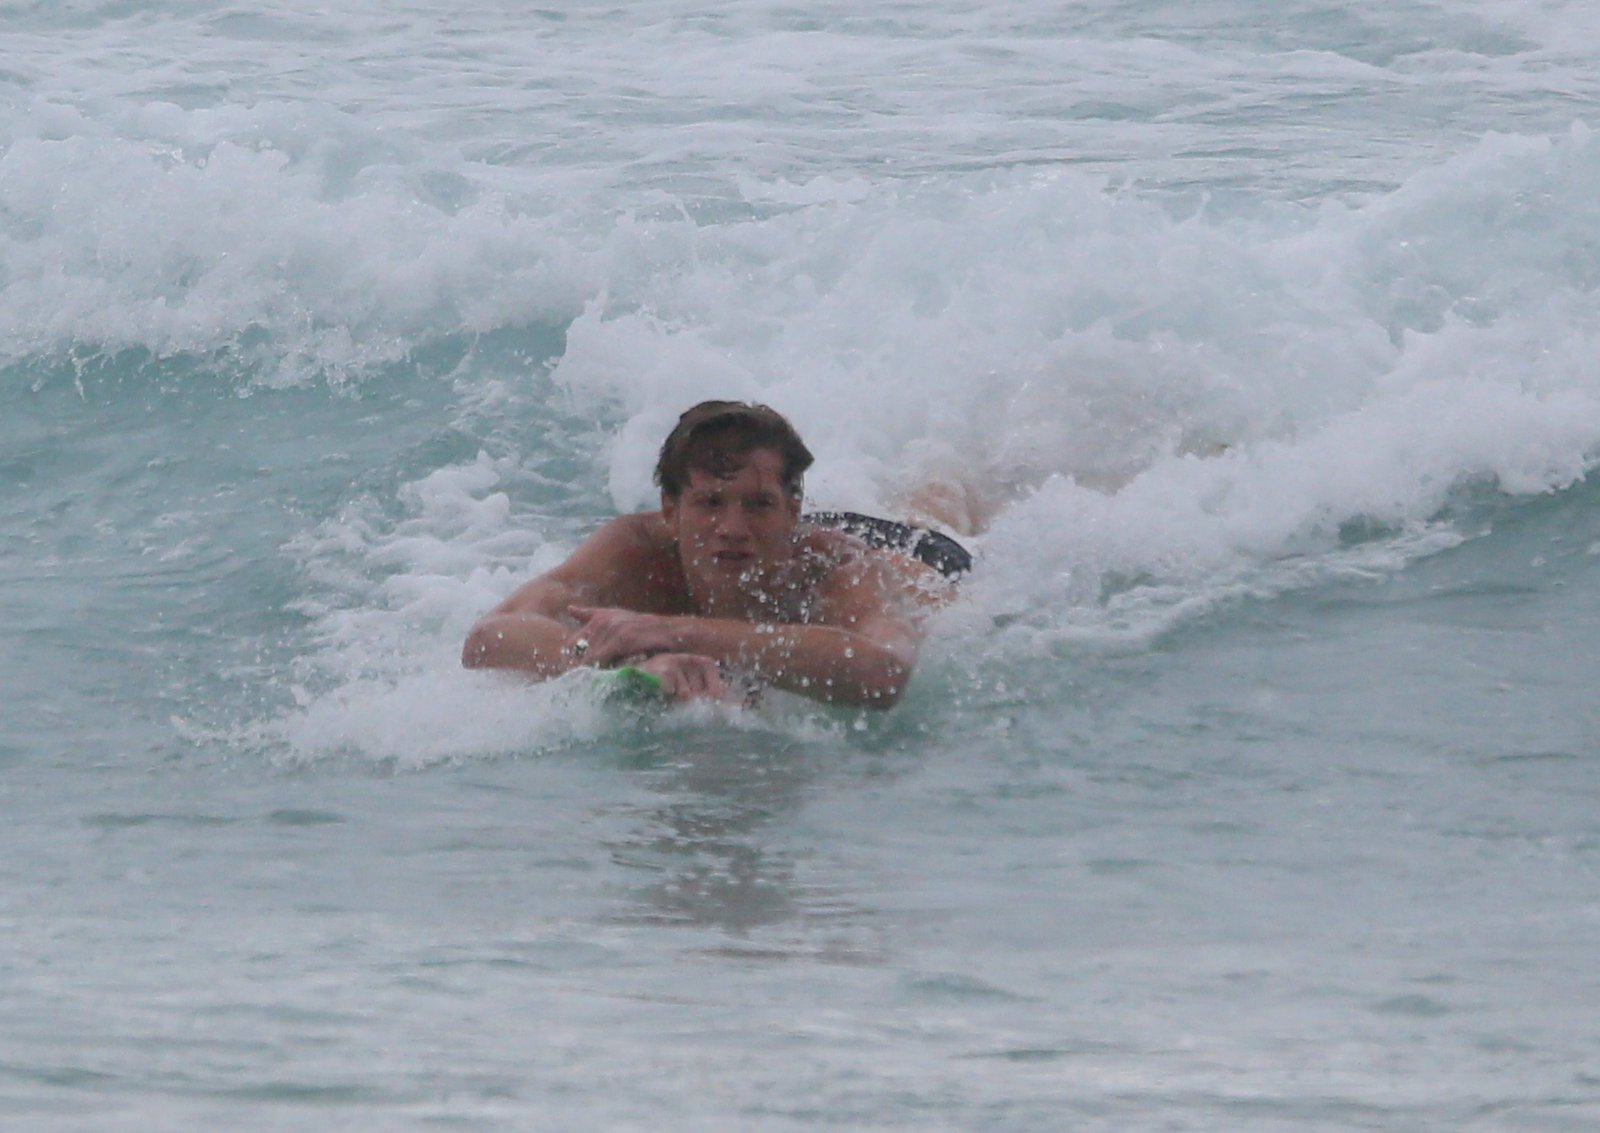 O jovem mostrou suas grandes habilidades no surfe